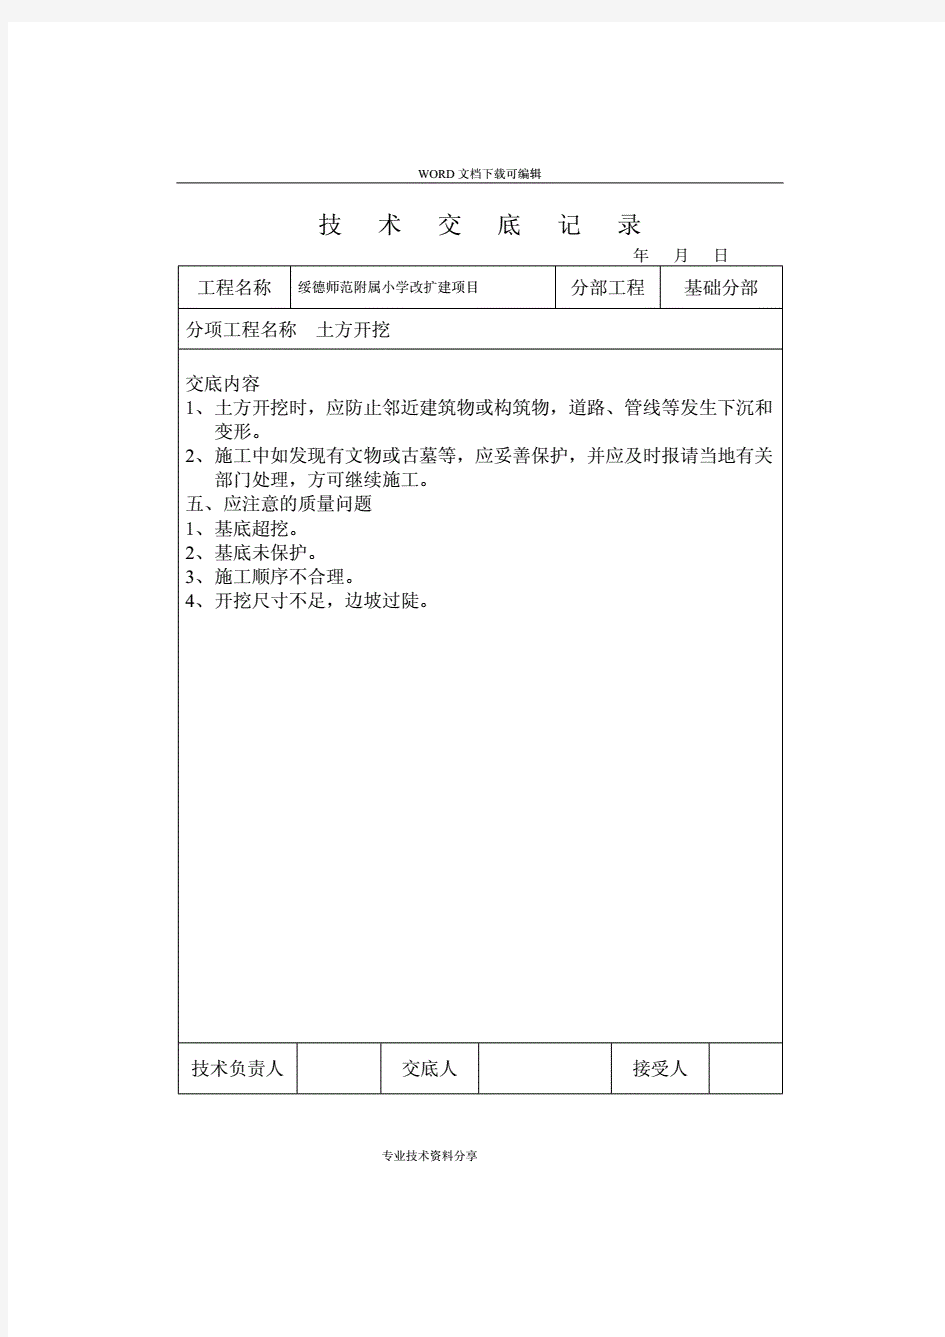 (全套)技术交底记录大全.pdf